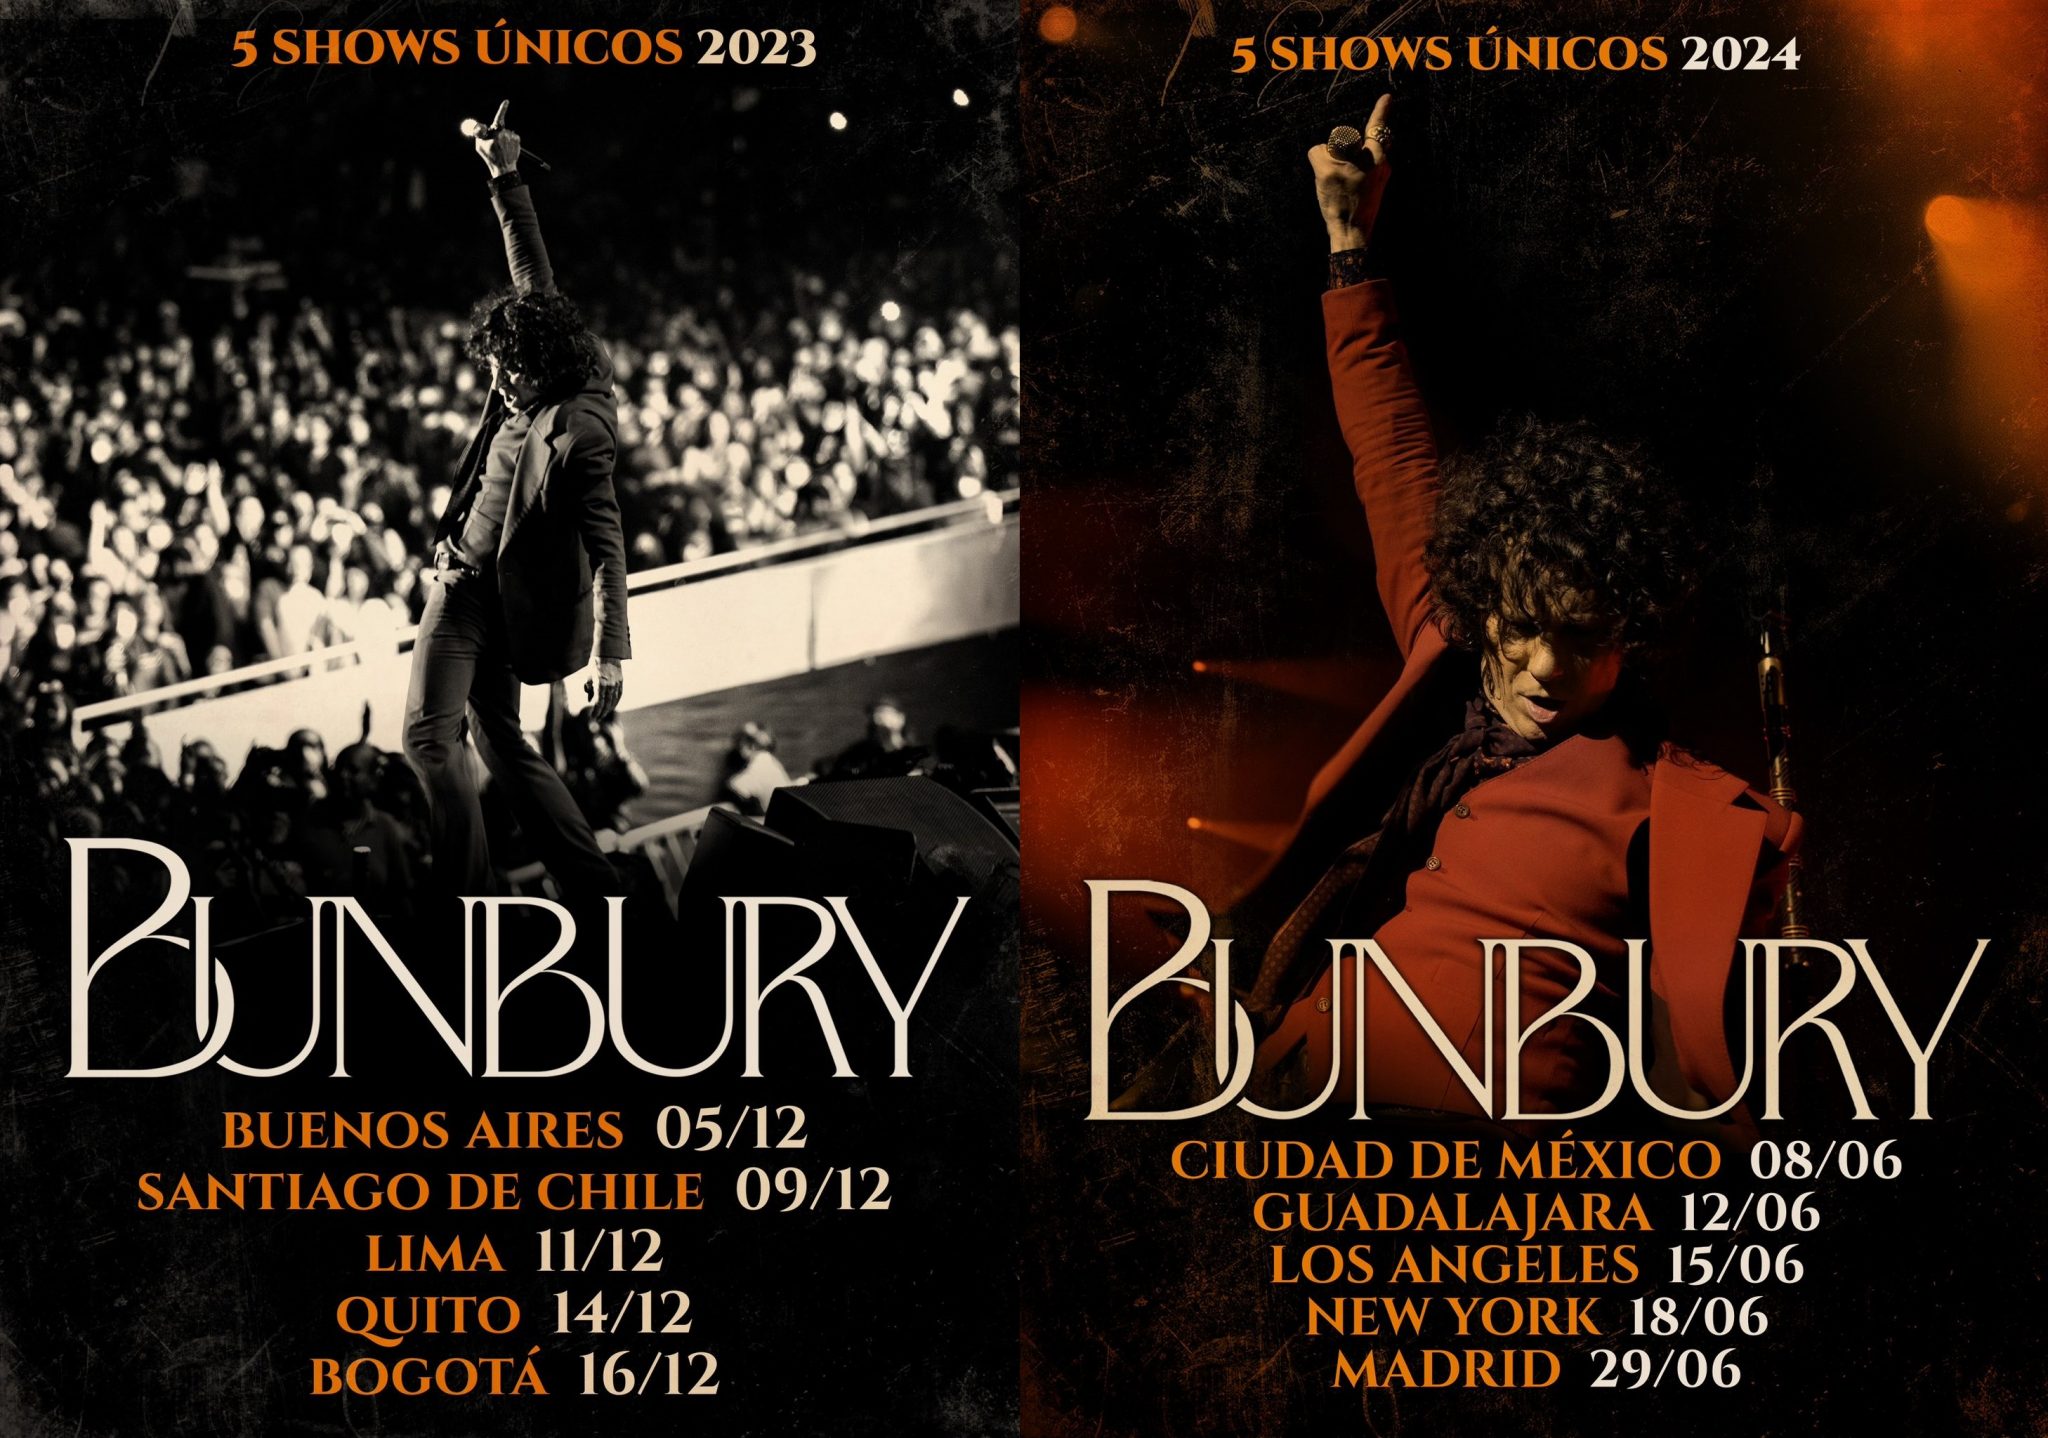 Conciertos de Bunbury en 2023 y 2024 MERCADEO POP